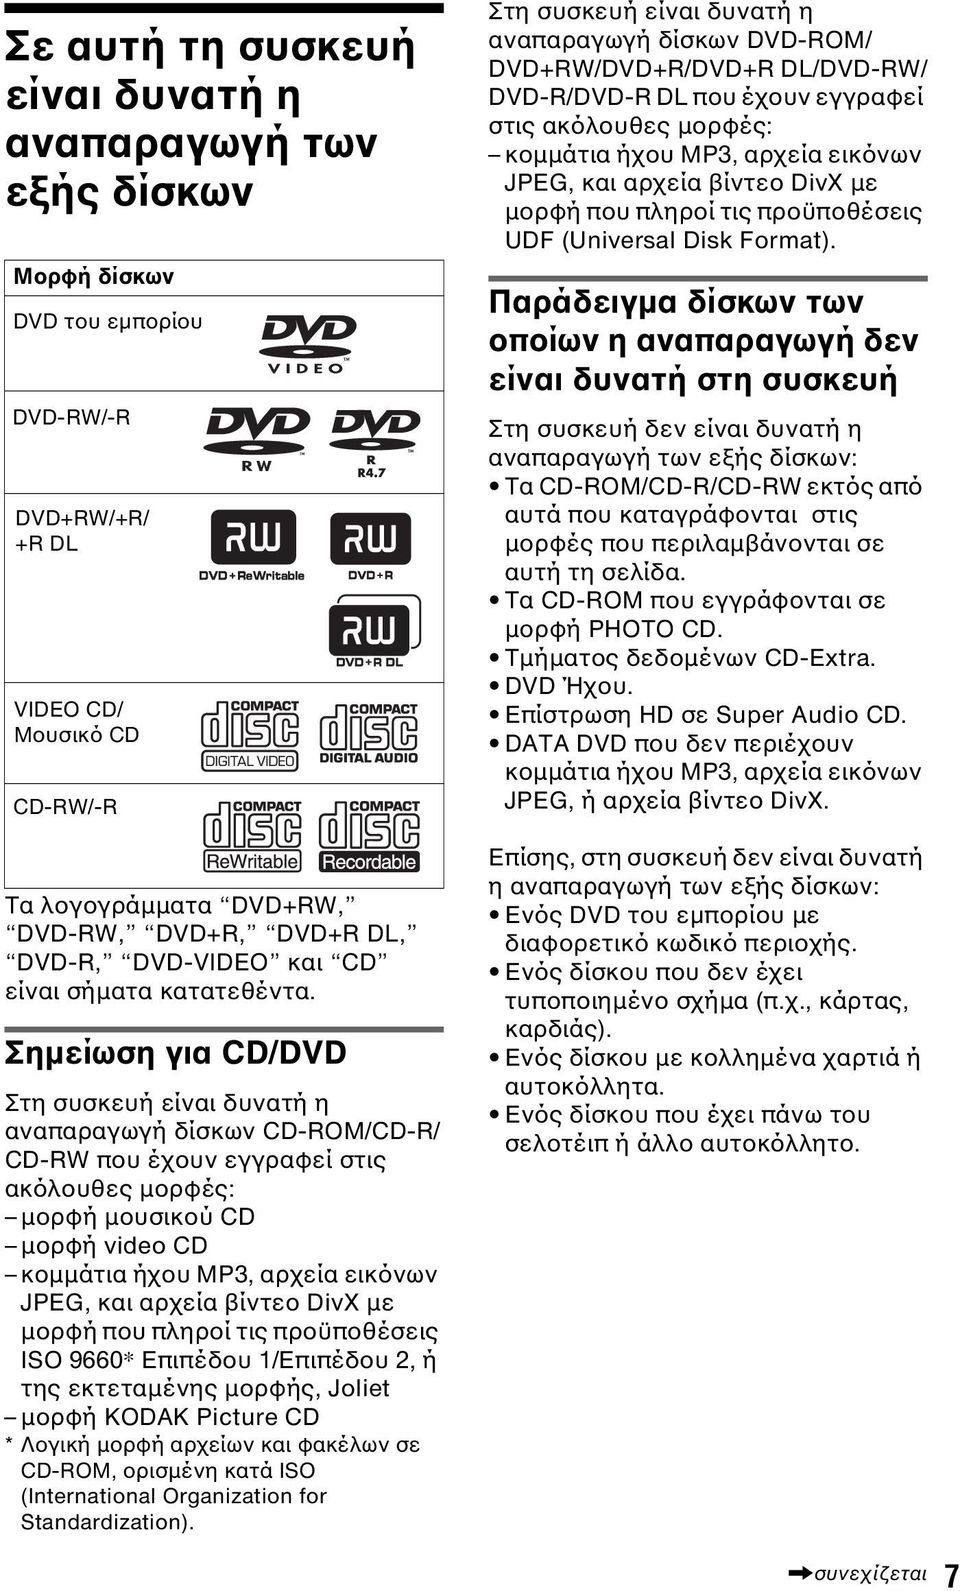 Σηµείωση για CD/DVD Στη συσκευή είναι δυνατή η αναπαραγωγή δίσκων CD-ROM/CD-R/ CD-RW που έχουν εγγραφεί στις ακόλουθες µορφές: µορφή µουσικού CD µορφή video CD κοµµάτια ήχου MP3, αρχεία εικόνων JPEG,